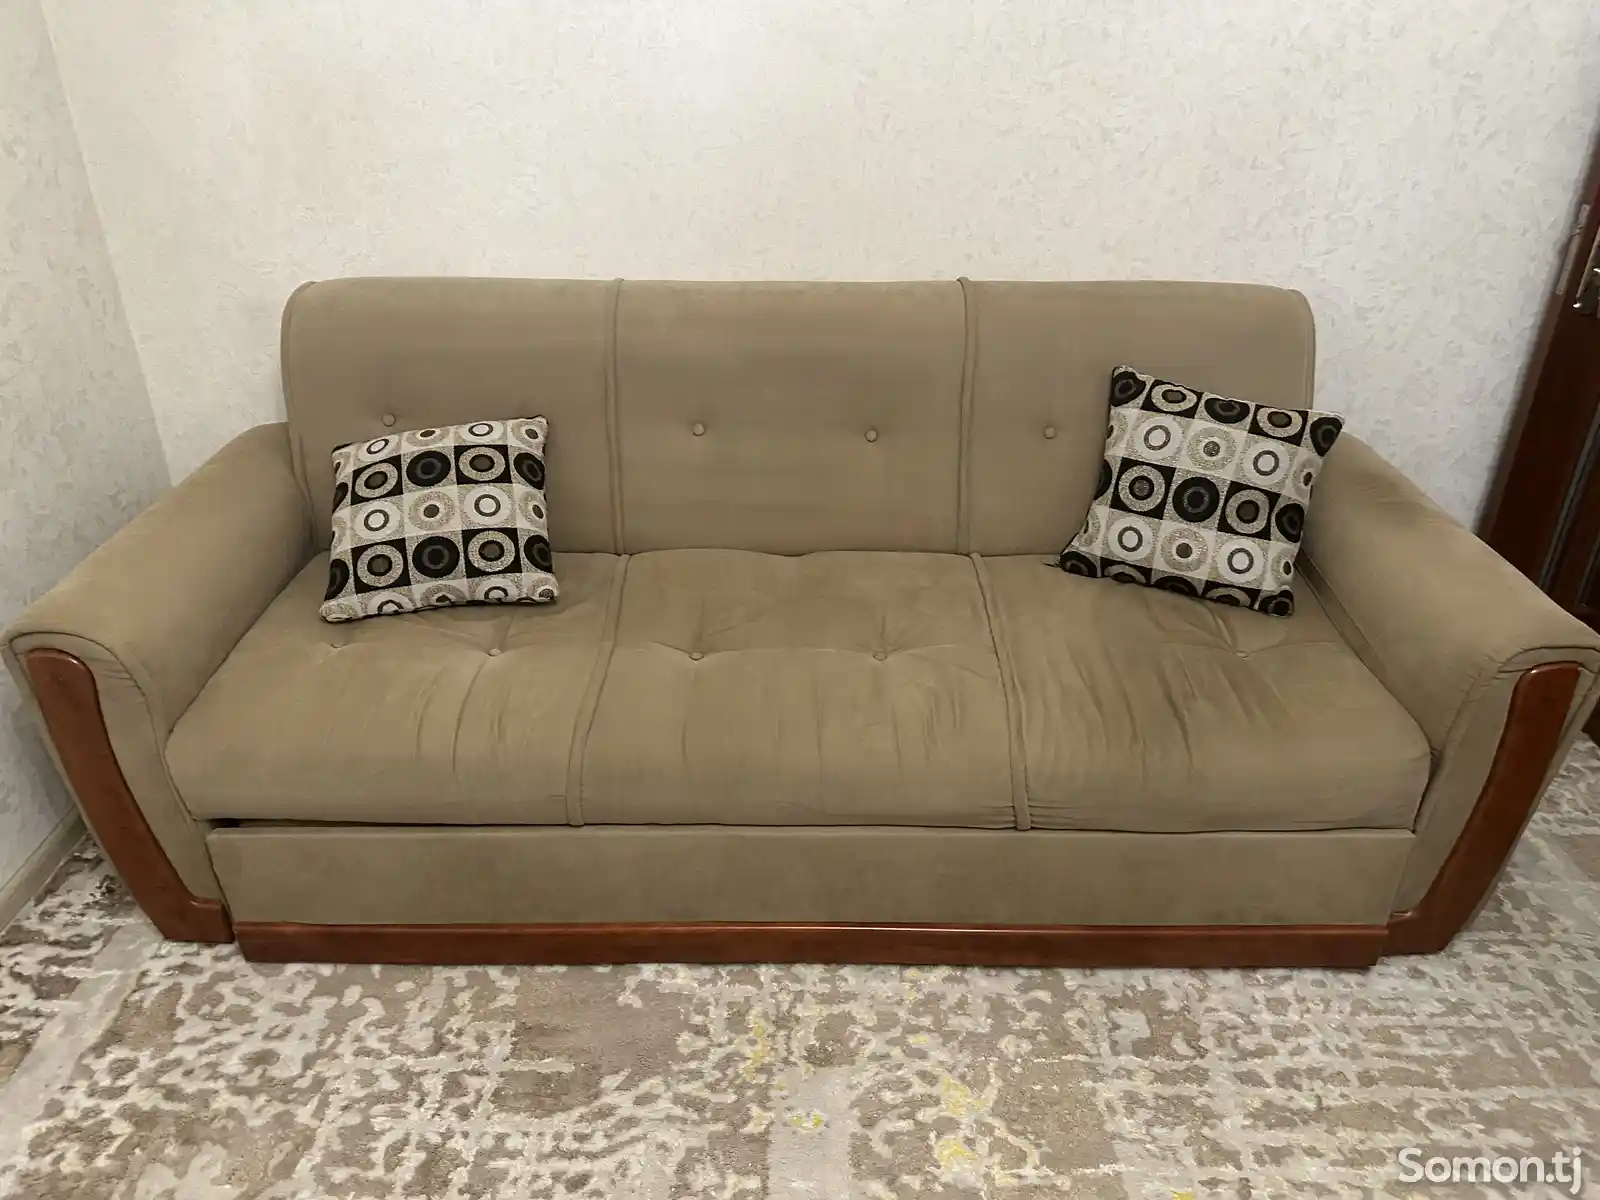 Раскладной диван, кресла и подставка для телевизора-1